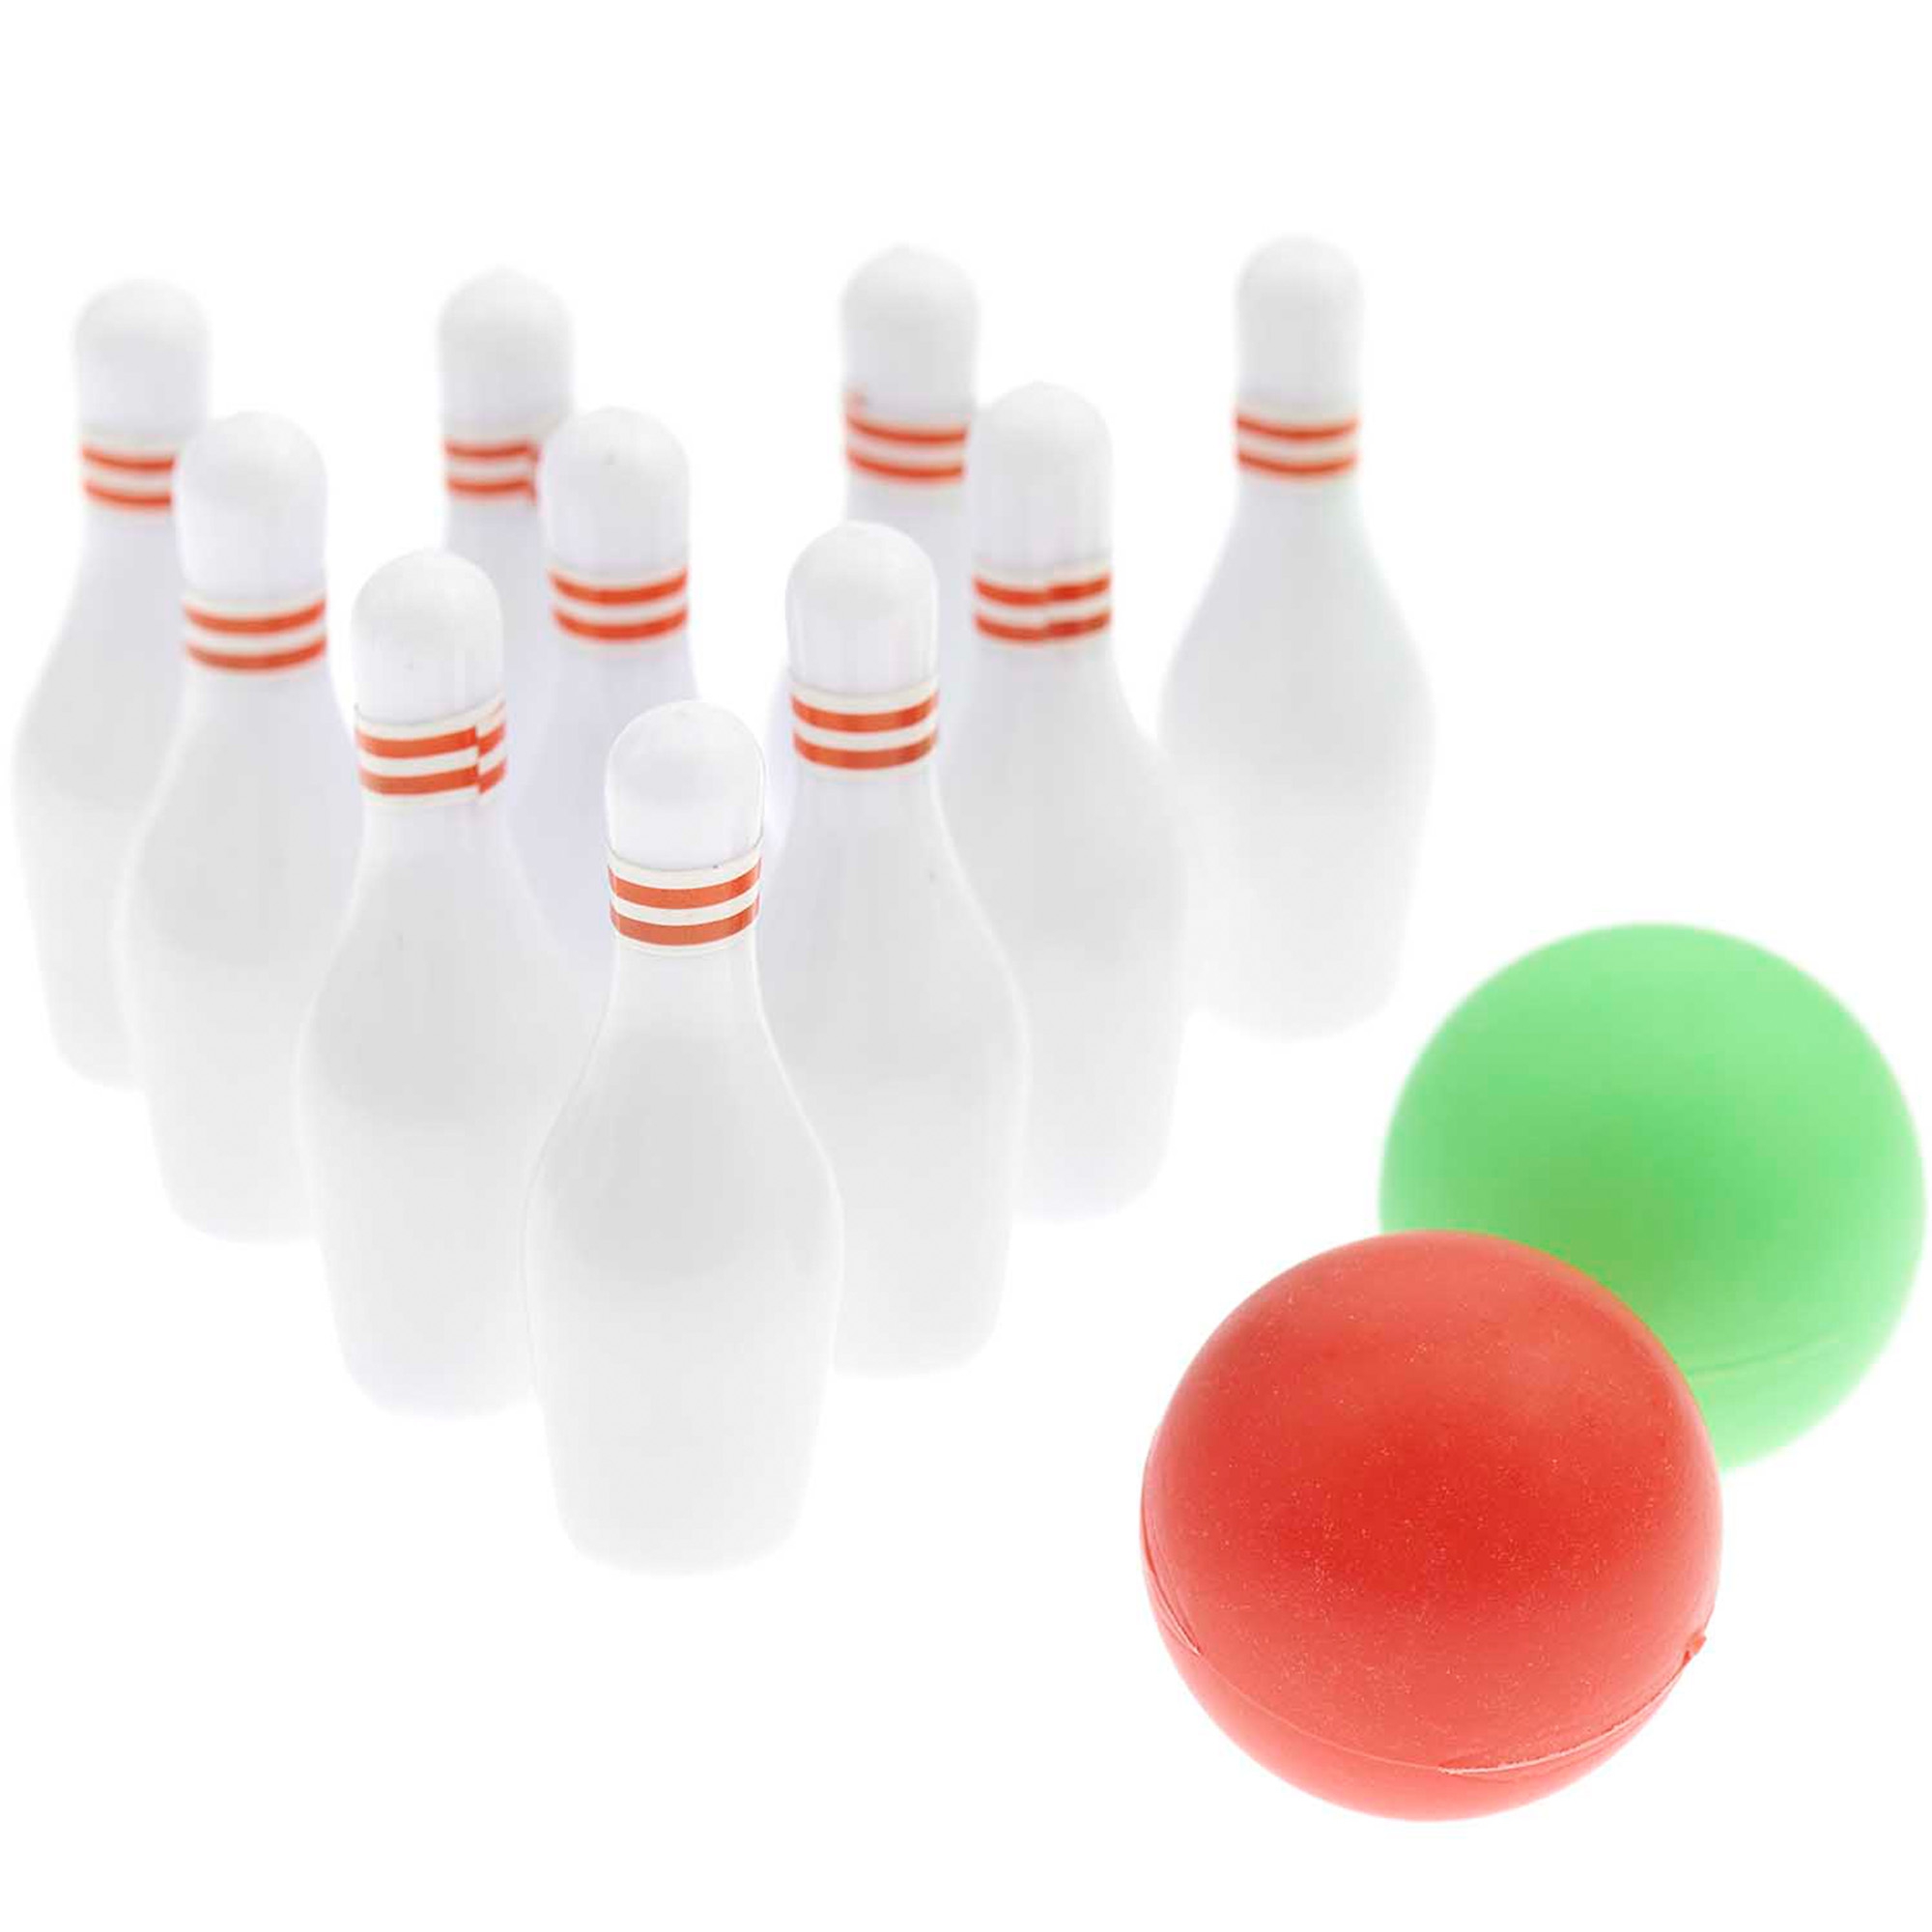 Miniatur "Bowling Set" für die Wichteltür